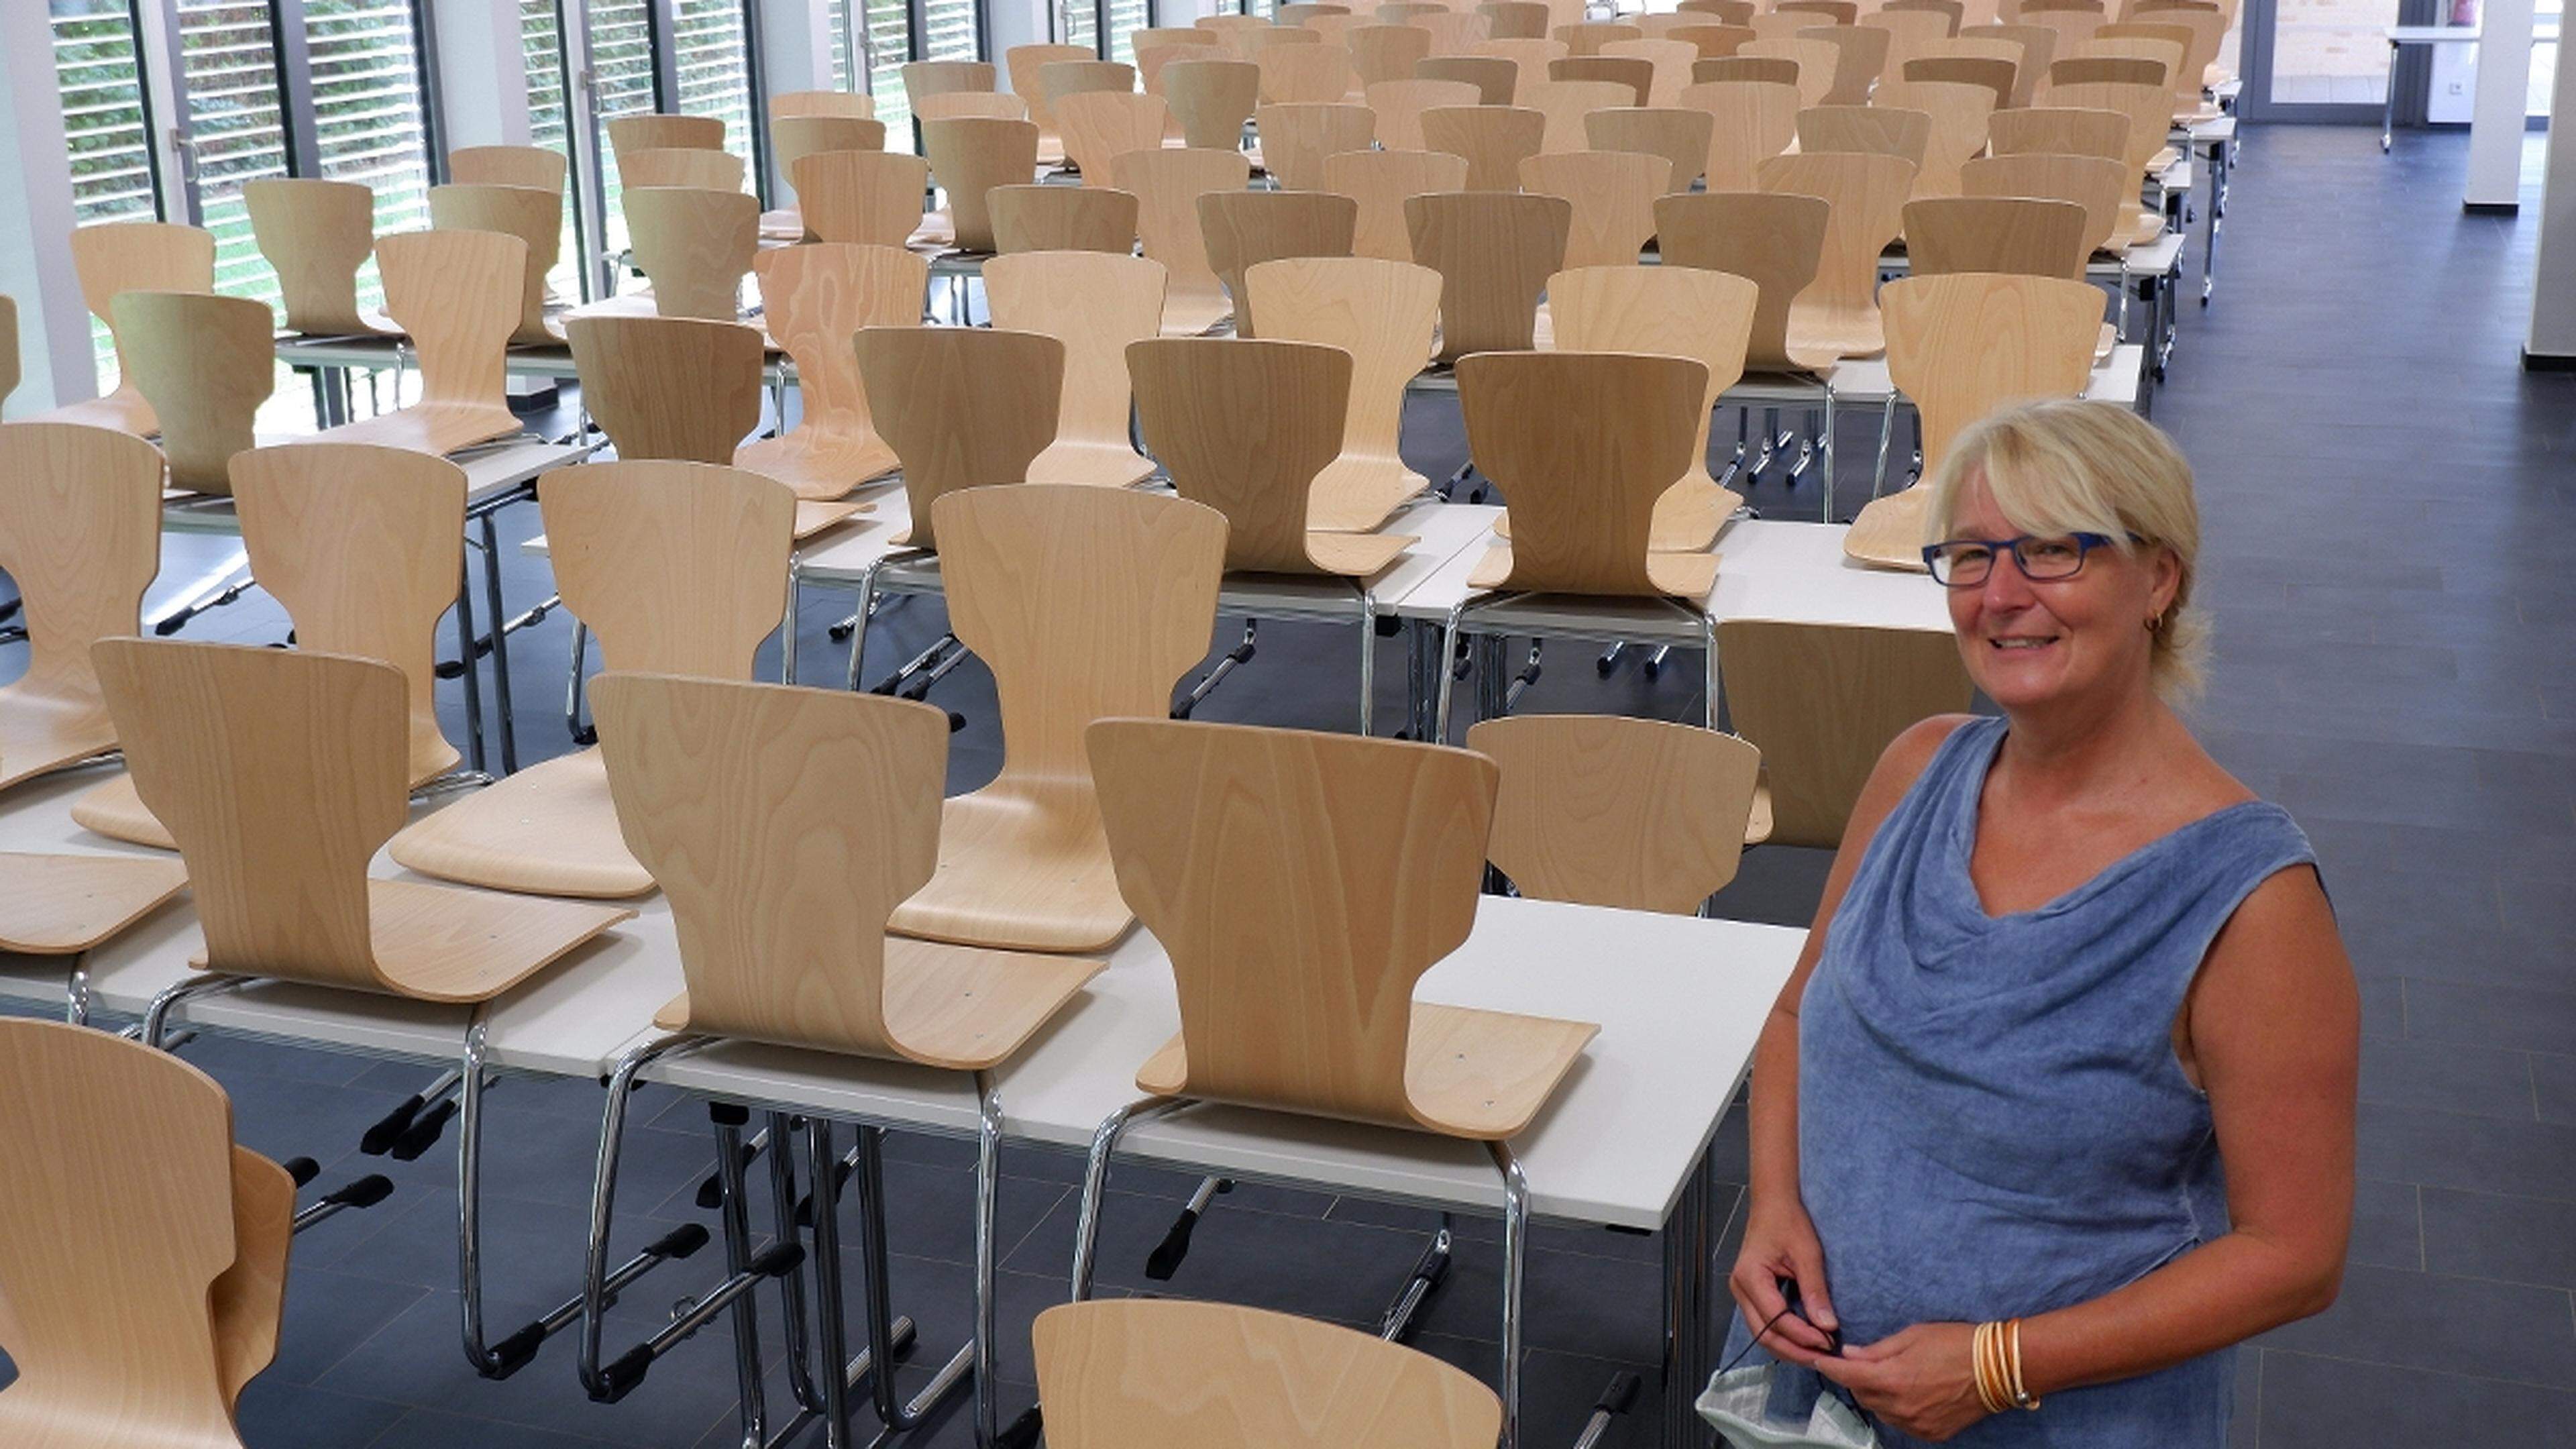 Der Mensaverein Würselen nimmt seine Arbeit wieder auf: Vorsitzende Dagmar Thorand und ihr Team müssen noch viel Vorarbeit leisten. So wird unter anderem noch die Bestuhlung des Speisesaals in der Gesamtschule (Bild) von 240 auf 150 Plätze reduziert, um Abstandsvorgaben einhalten zu können.